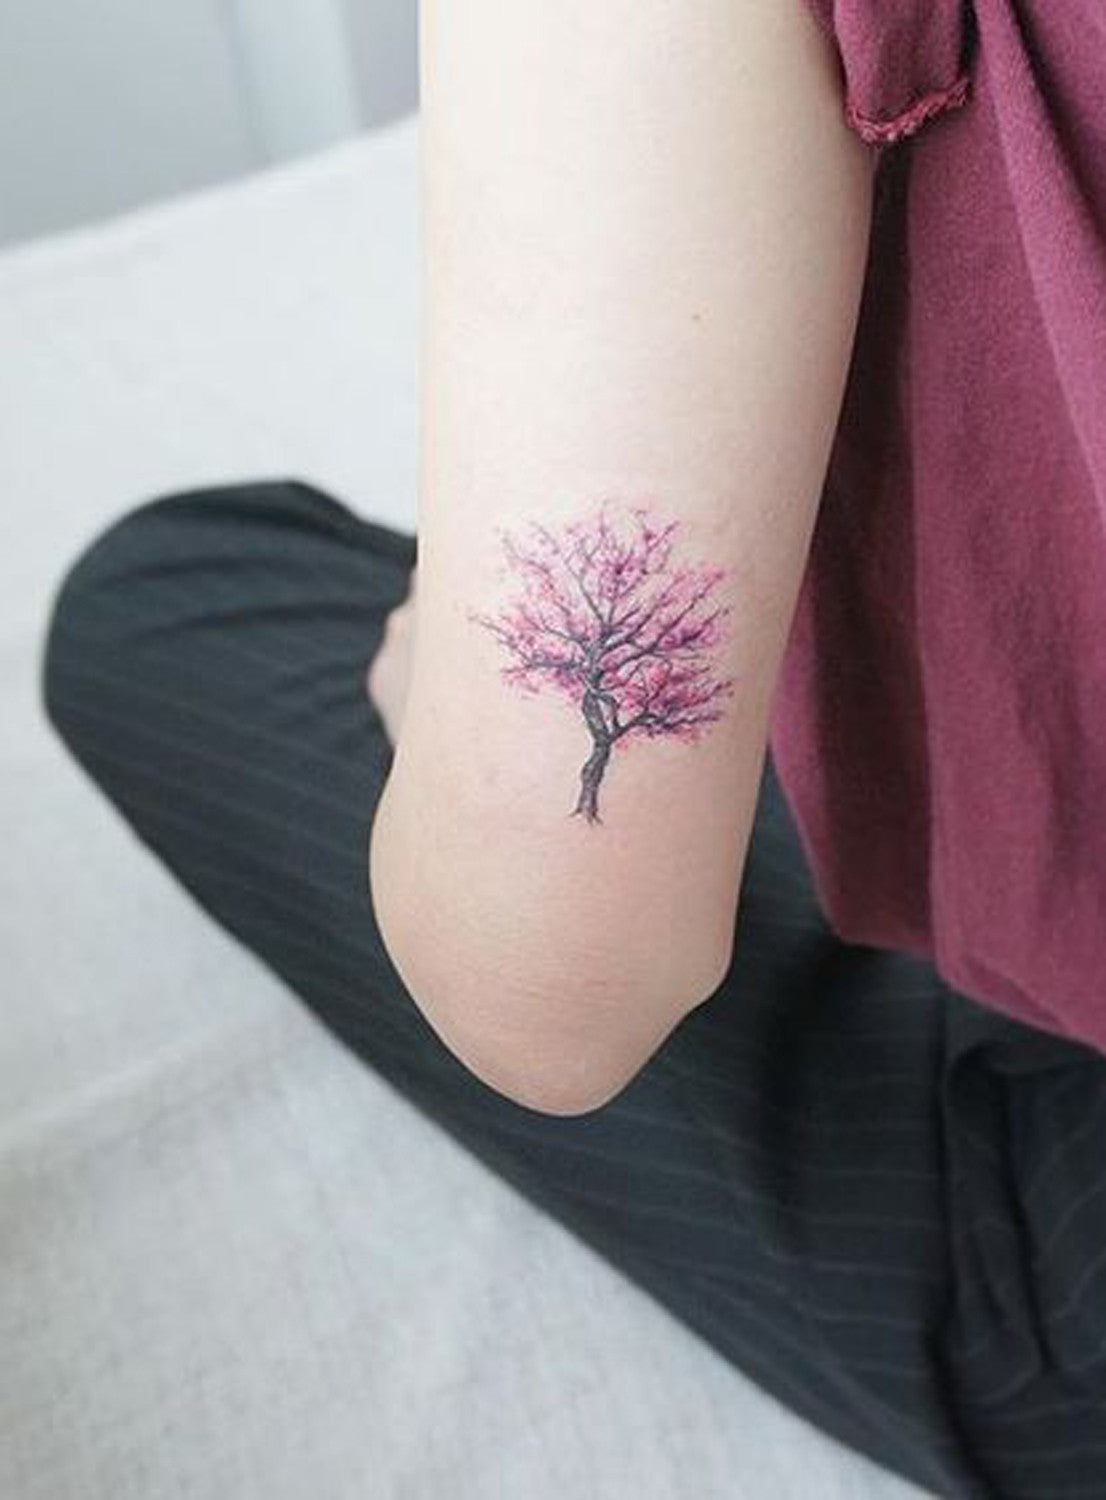 Back of Arm Cherry Blossom Tree Tattoo Ideas at MyBodiArt.com